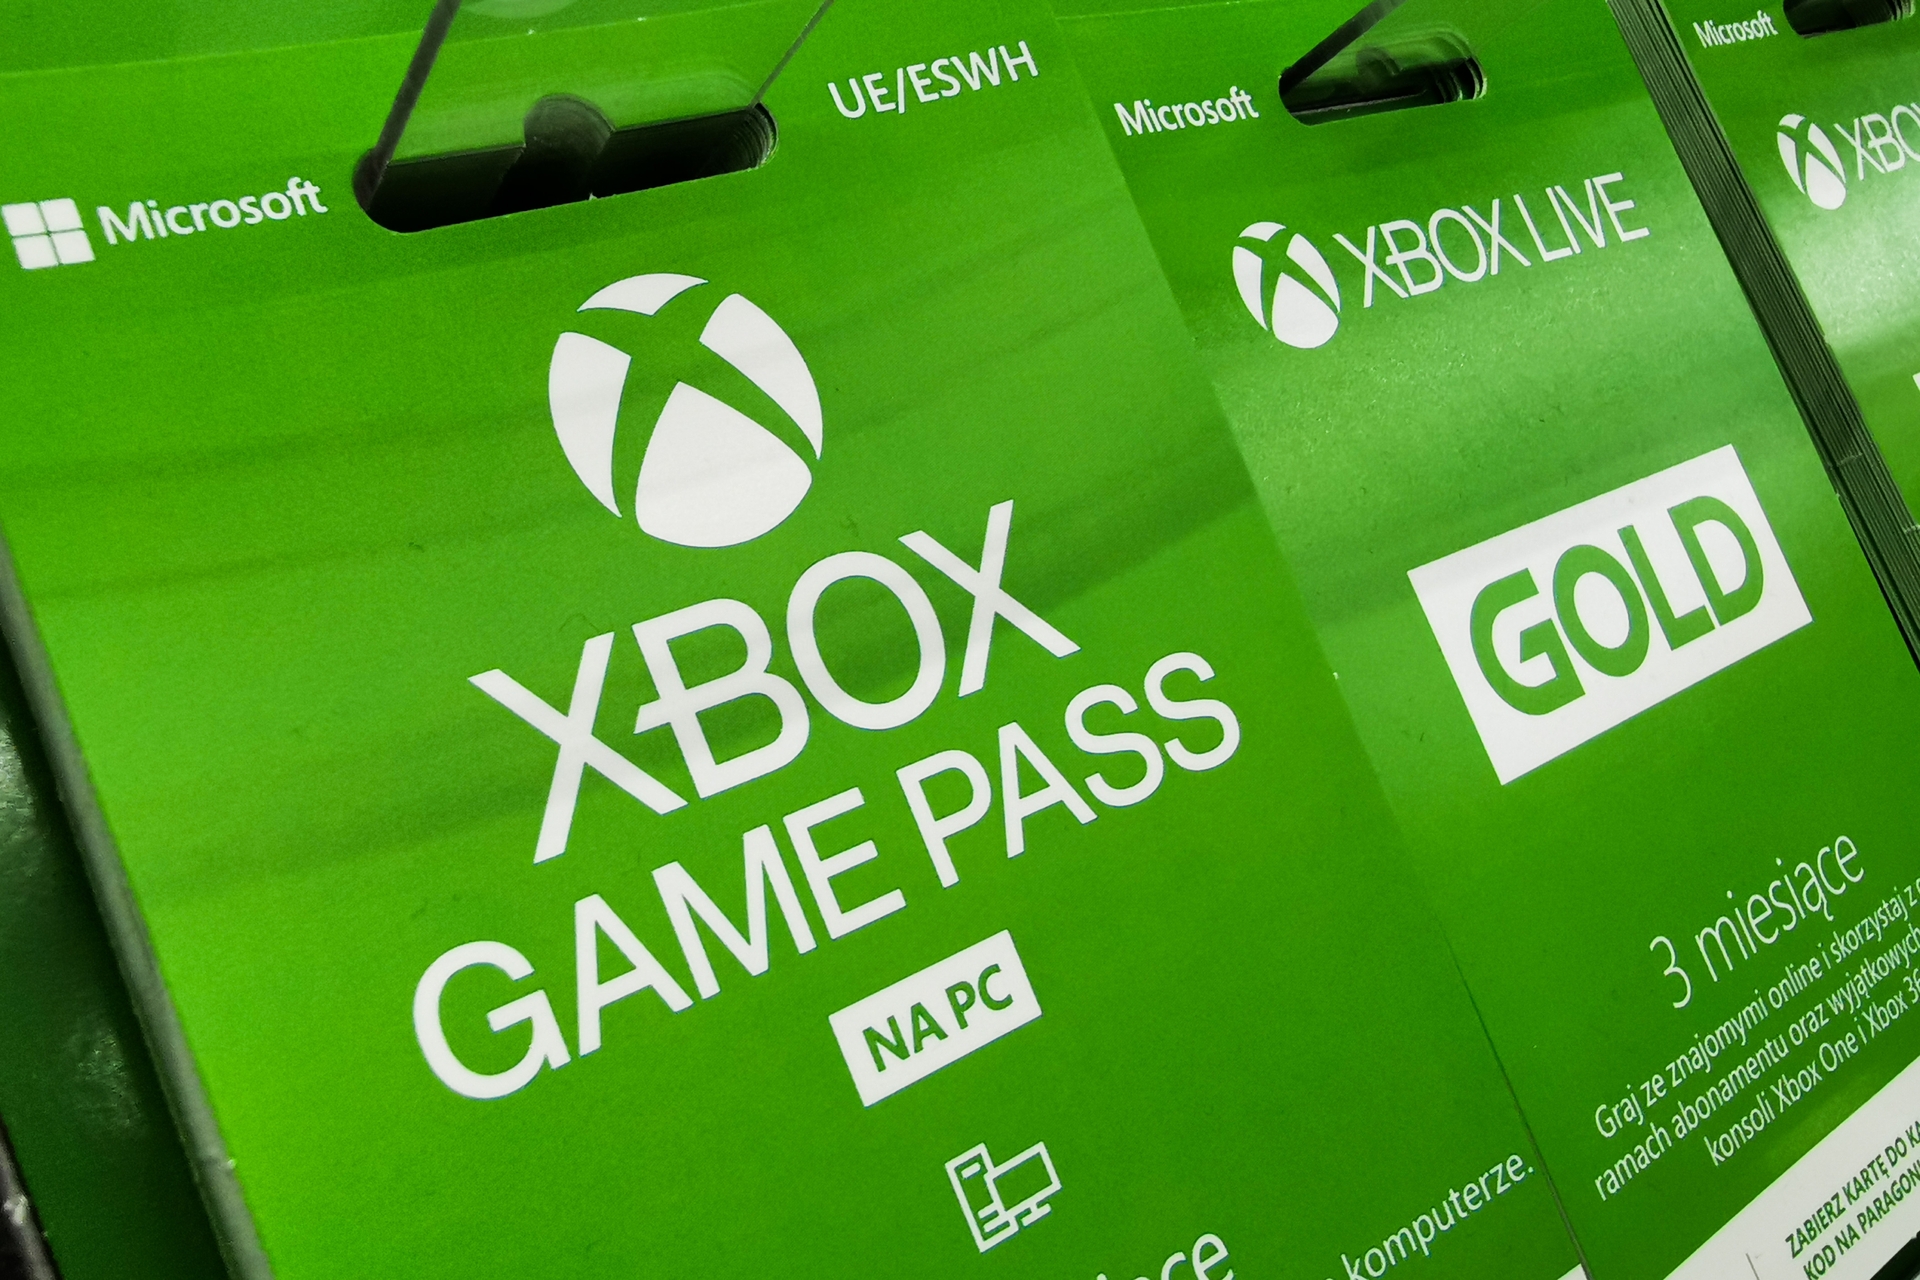 Dzisiaj zajmiemy się planem rodzinnym Xbox Game Pass, który jest obecnie testowany przez Microsoft i ułatwi udostępnianie subskrypcji.